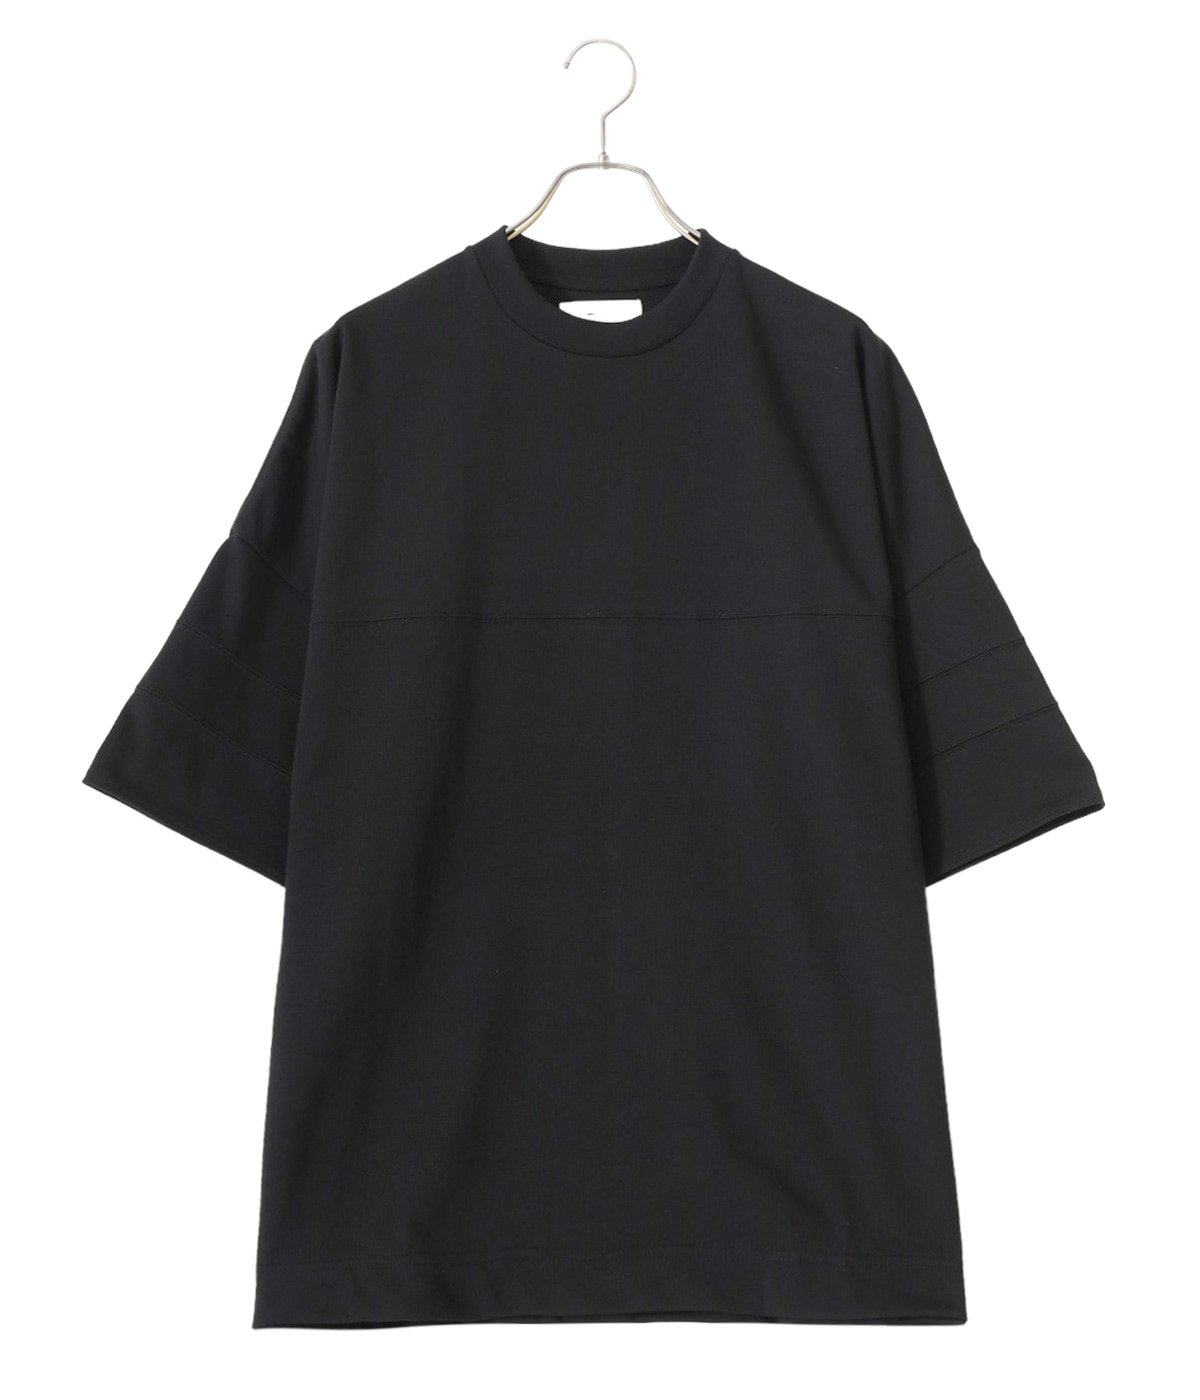 Tシャツ/カットソー(半袖/袖なし)marka フットボールt - Tシャツ 